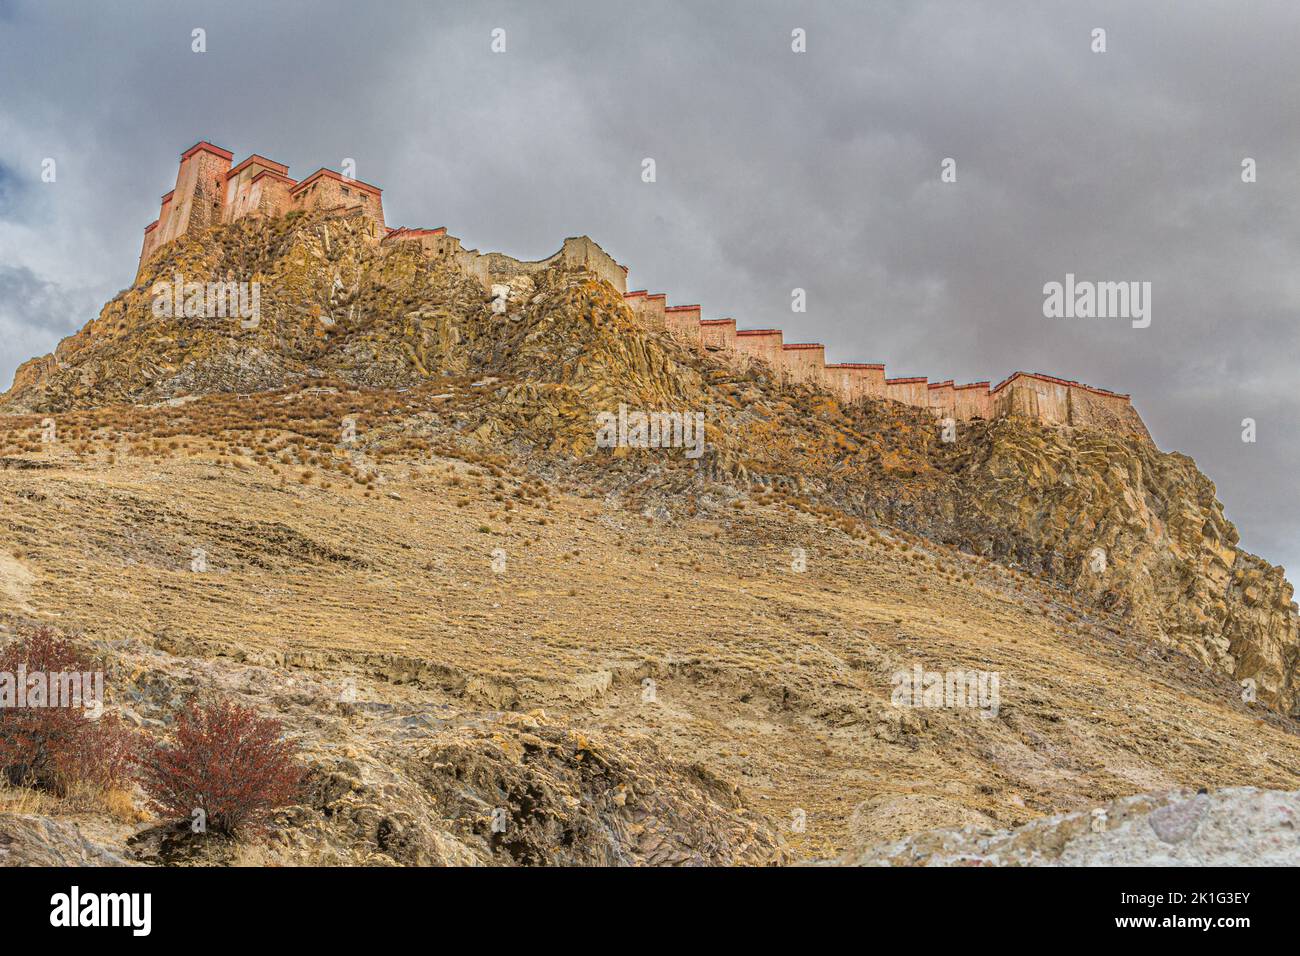 Festung Gyantse Dzong auf einem riesigen Felsvorsprung. Die Festung wurde 1390 erbaut und bewachte die Zugänge zum Tsangpo-Tal und Lhasa Stockfoto